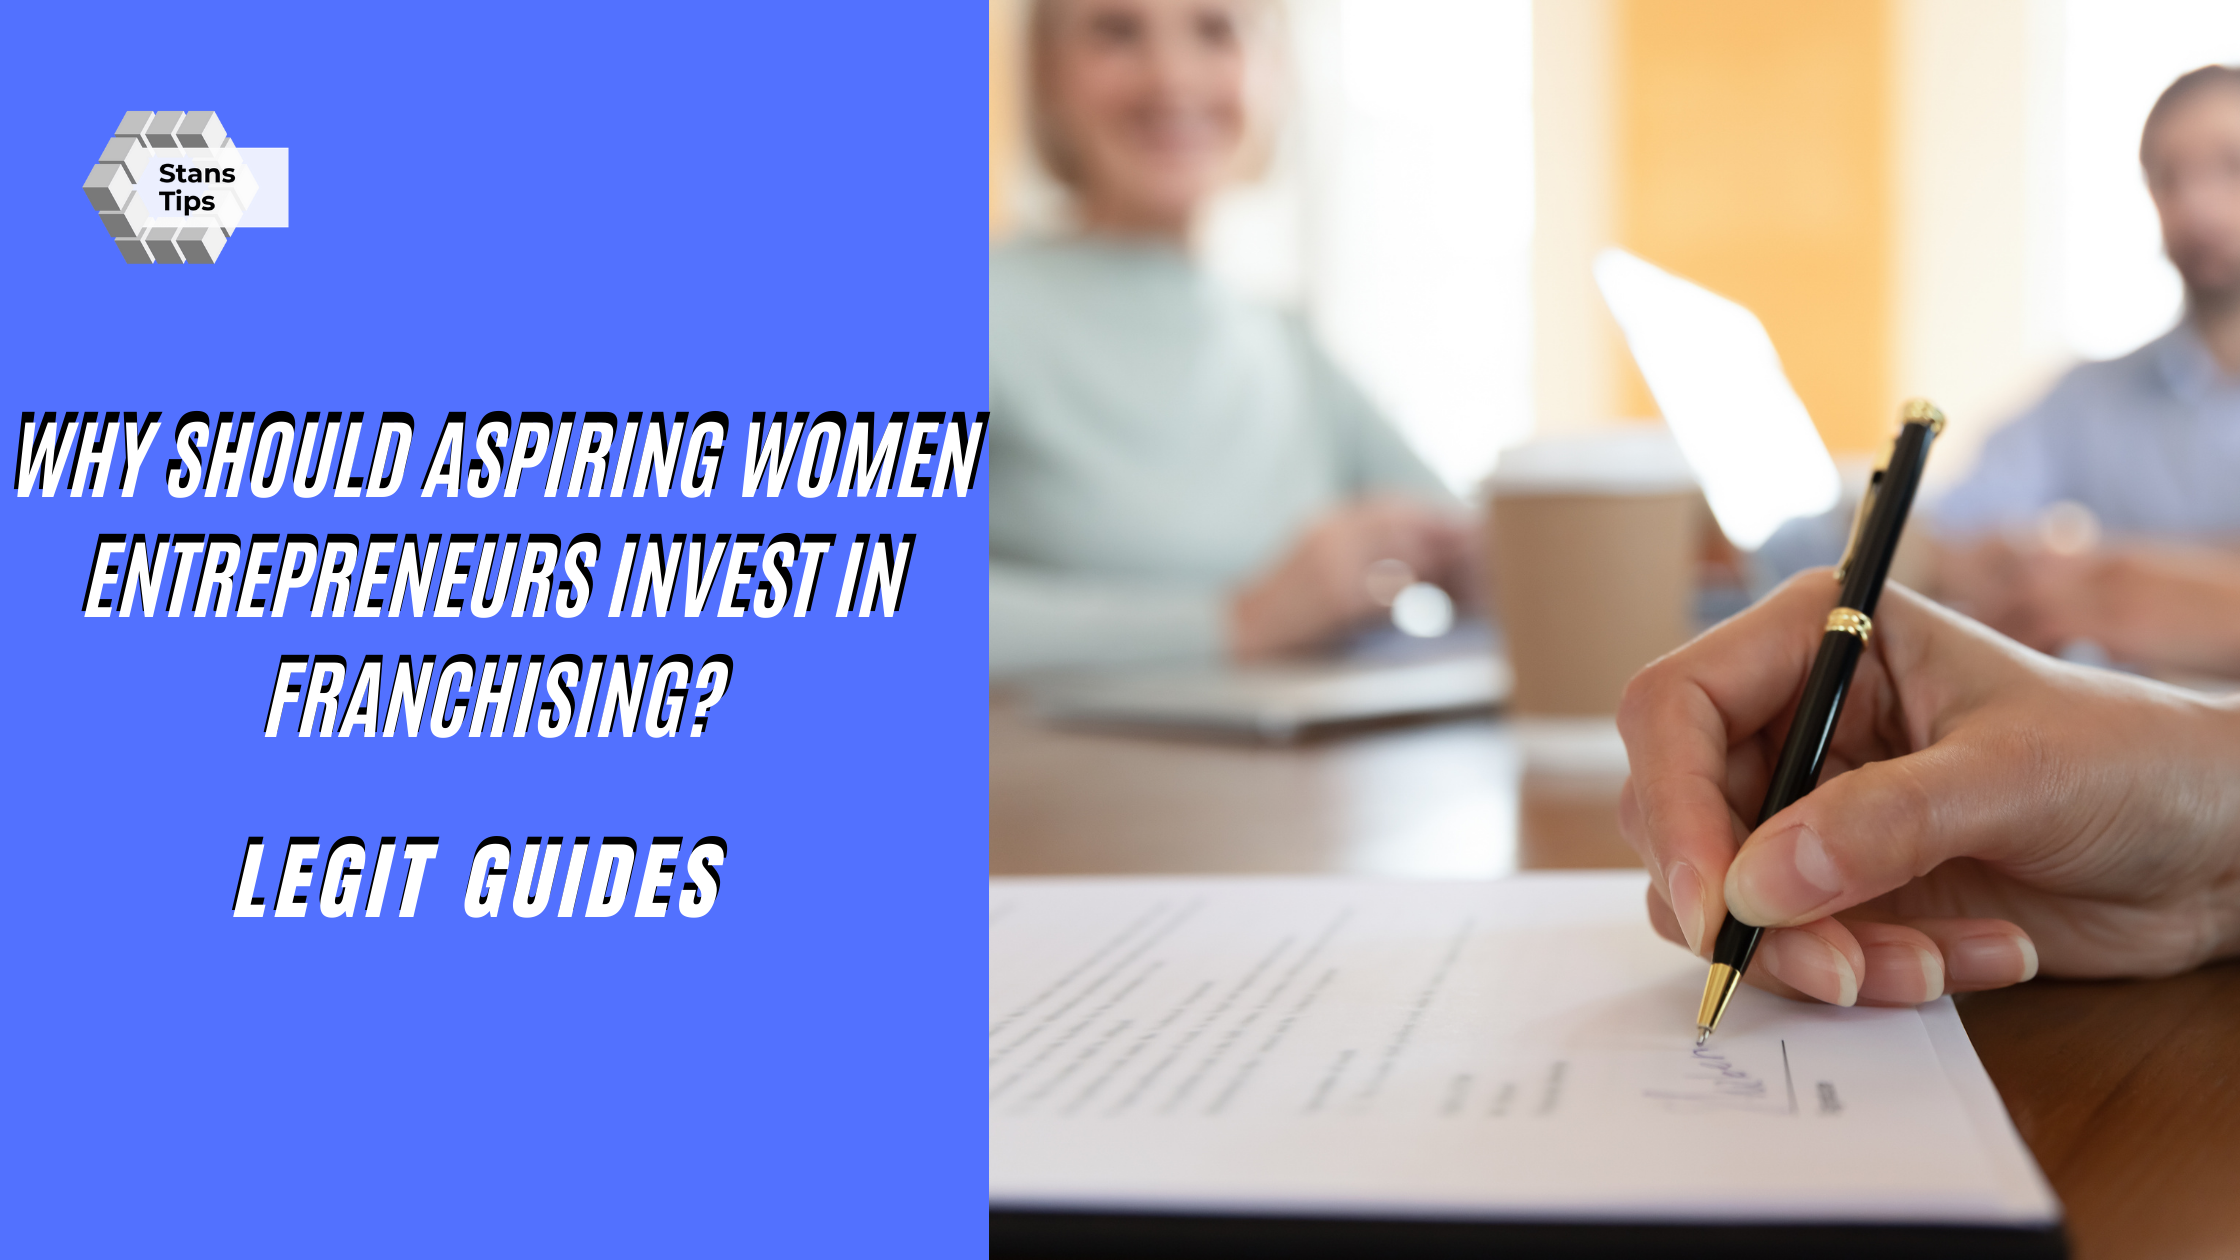 Aspiring women entrepreneurs invest in franchising